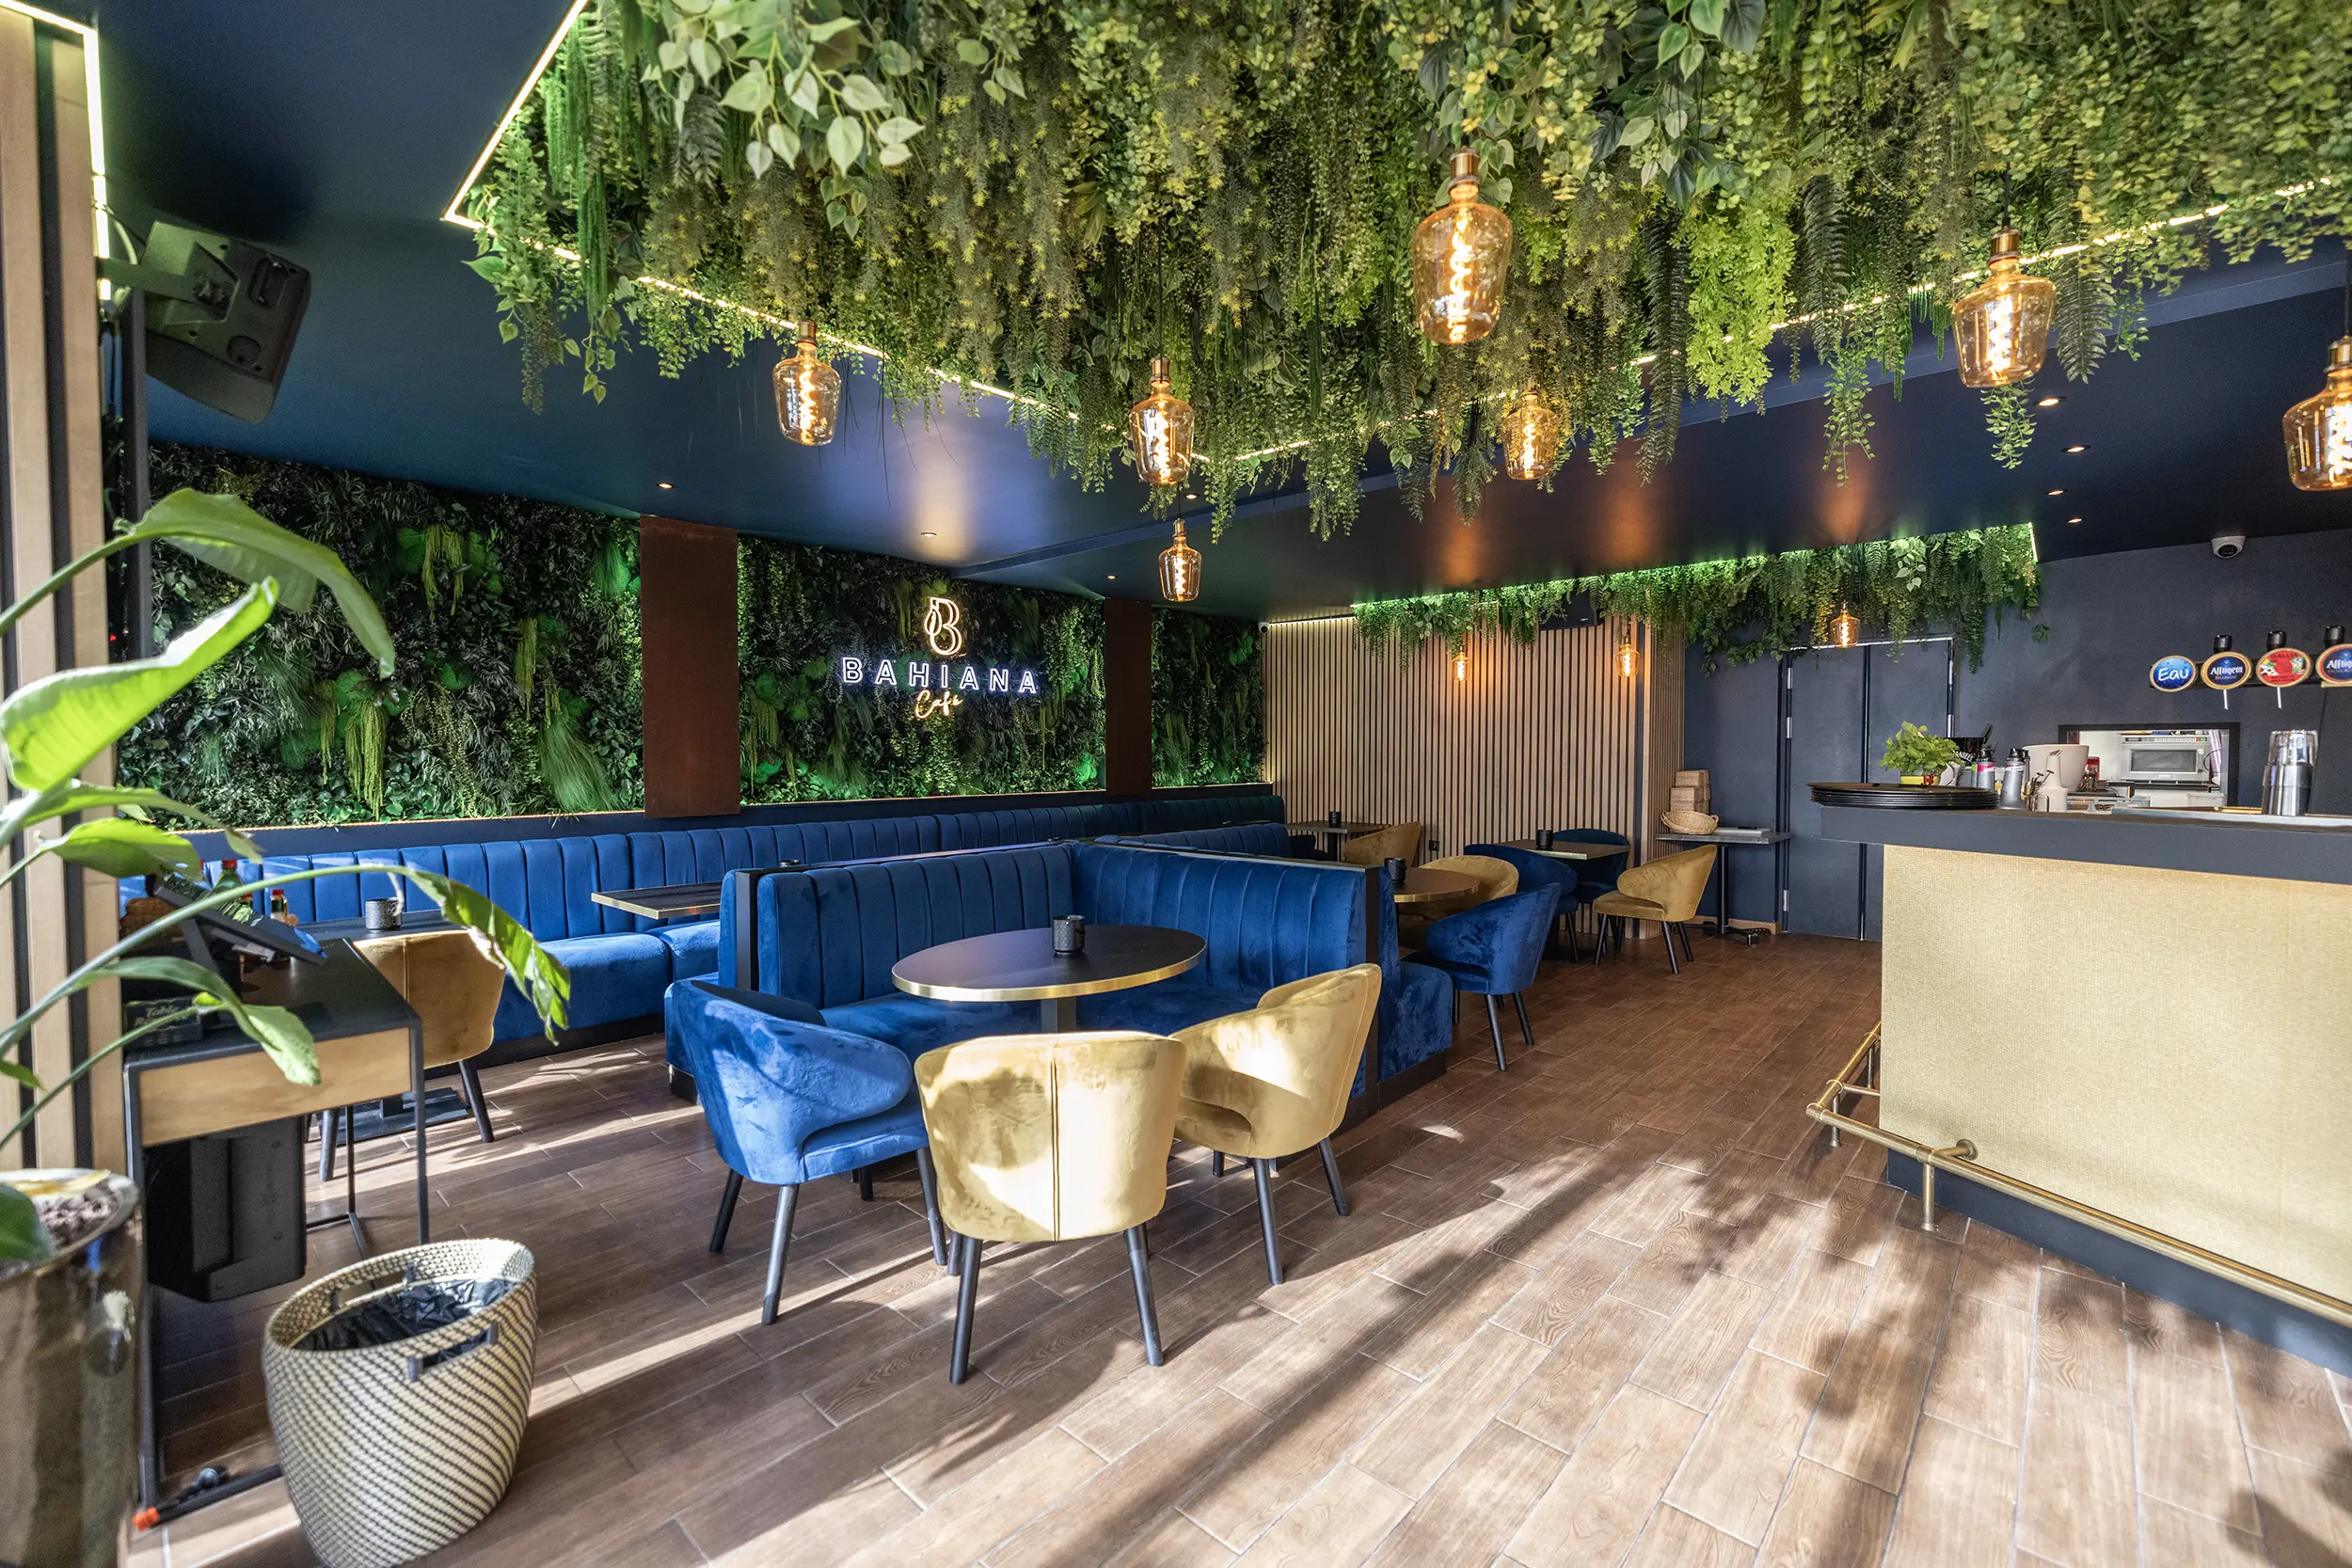 Murs végétaux et tables du Bahiana Café. C'est un bar restaurant à Paris aménagé en son et lumière par le Groupe Silam.